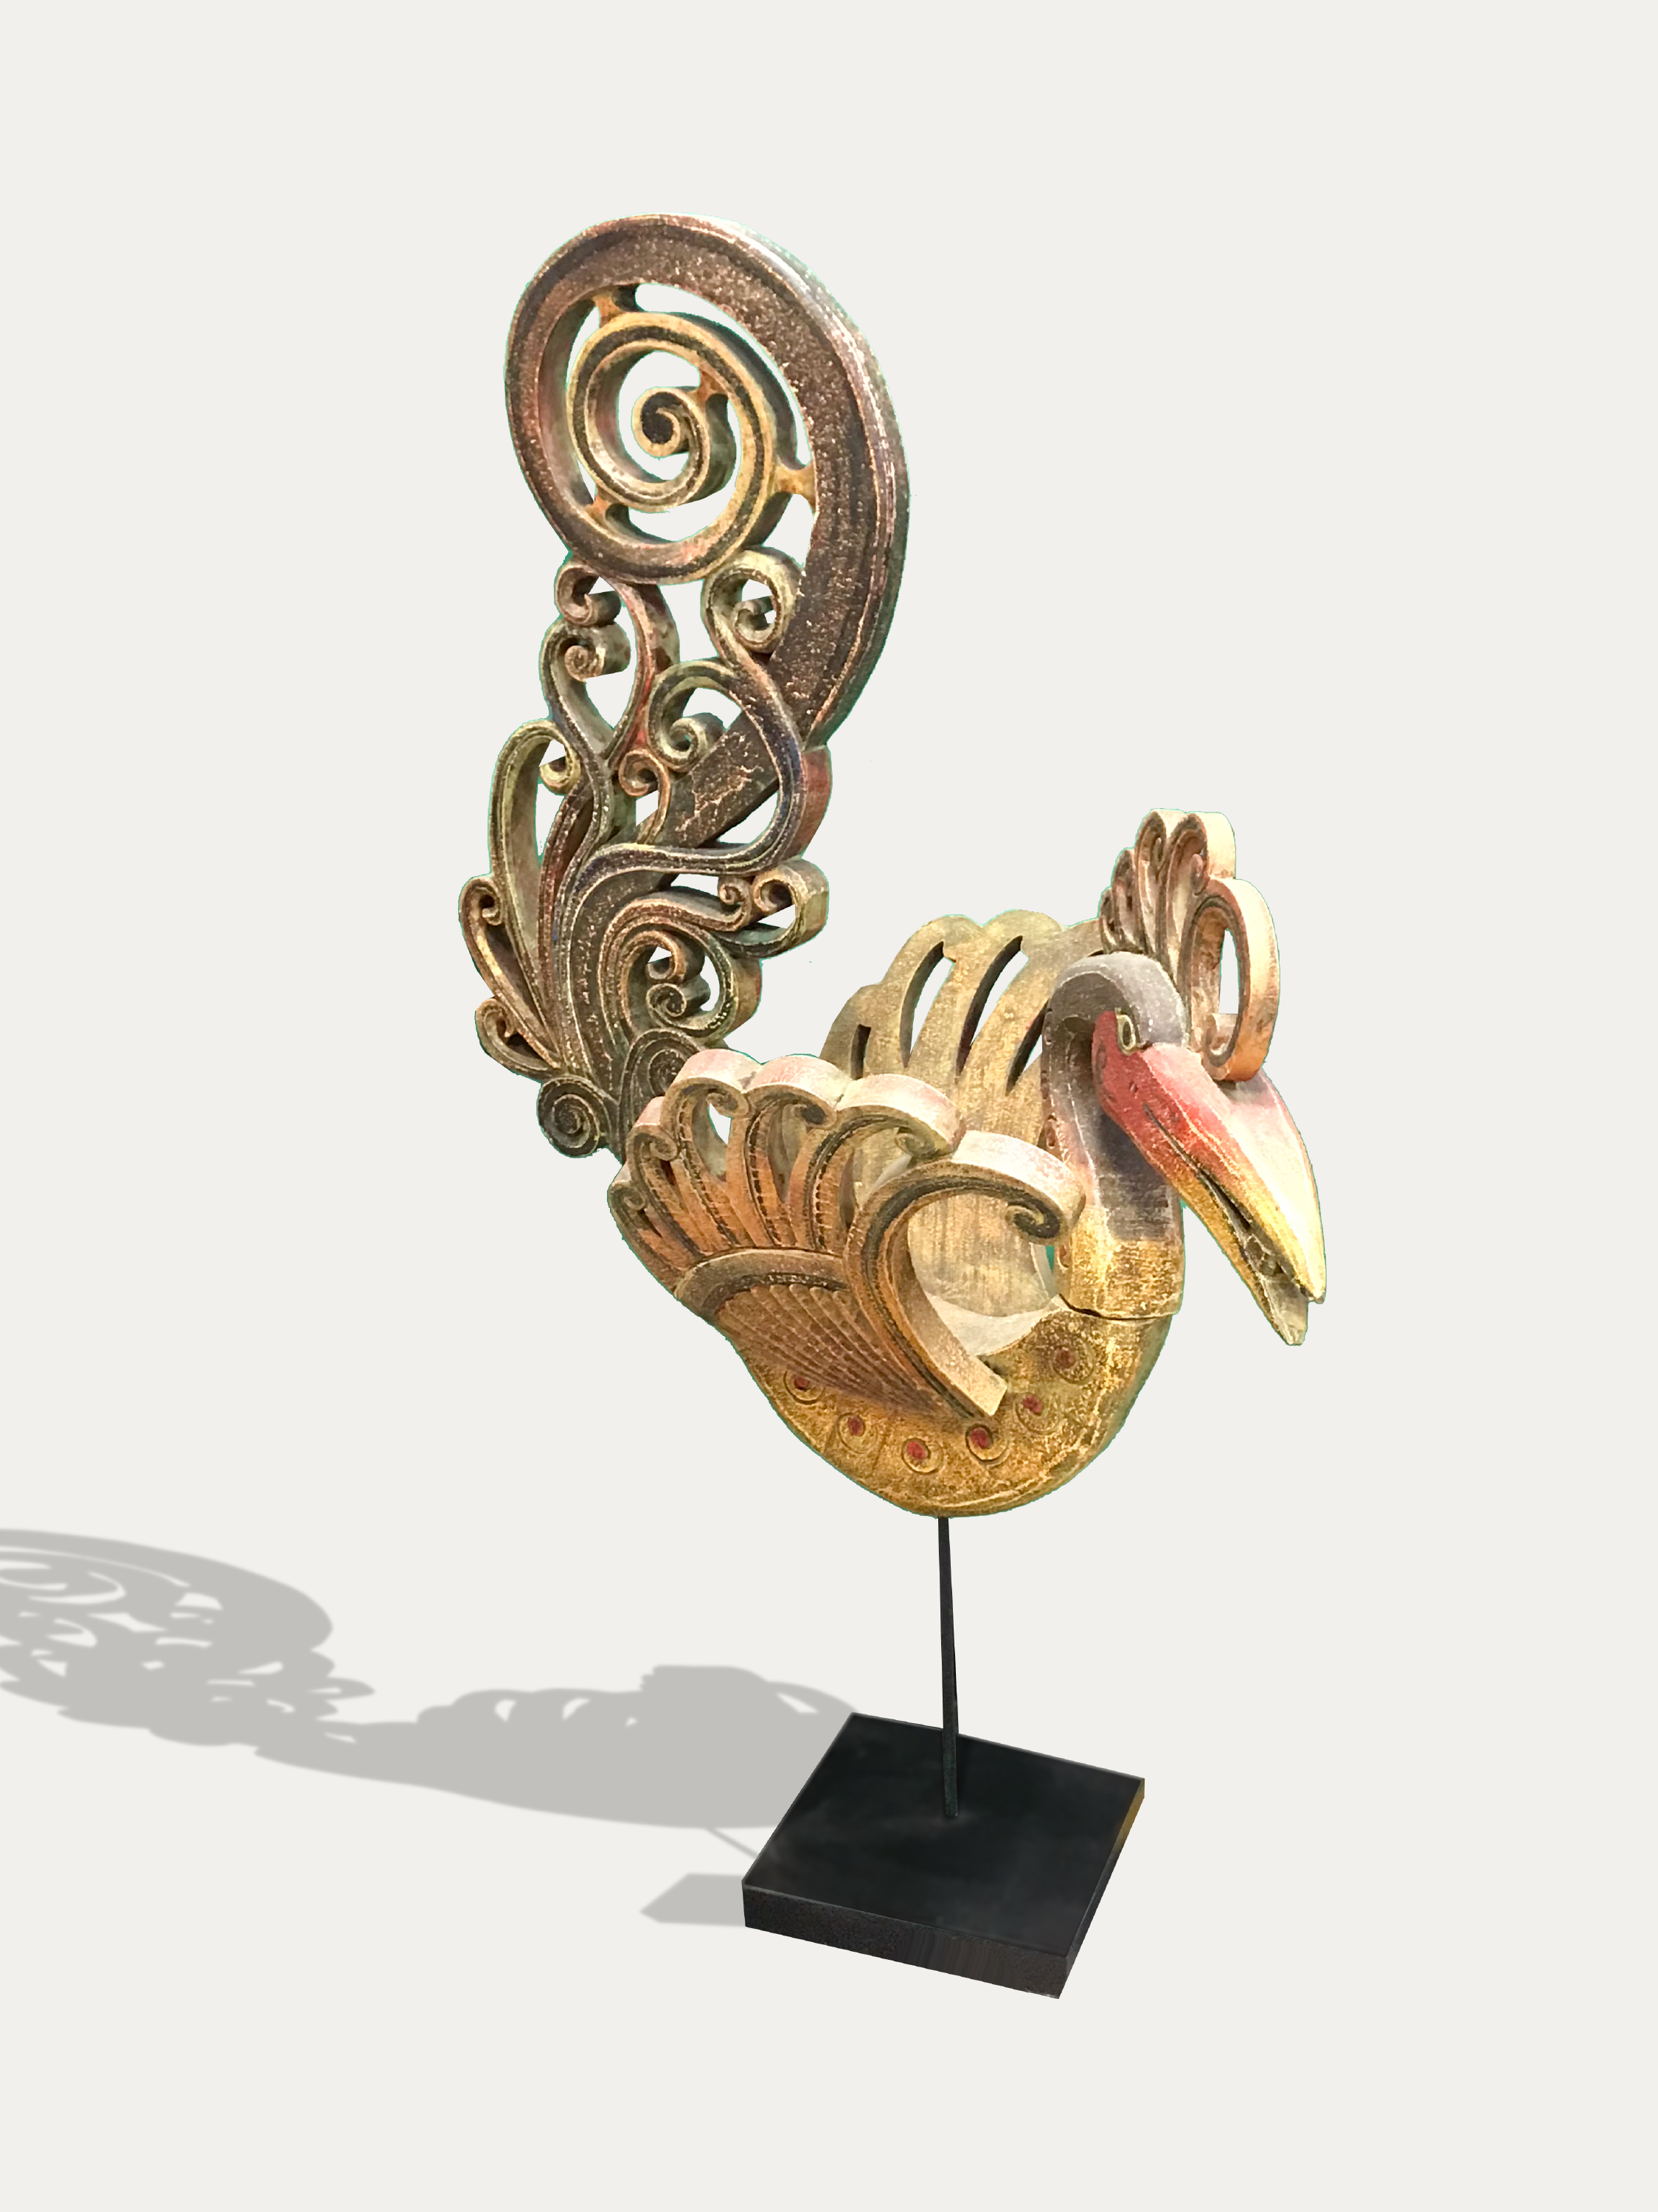 Large Hornbill sculpture from Borneo - Asian Art from Kirschon